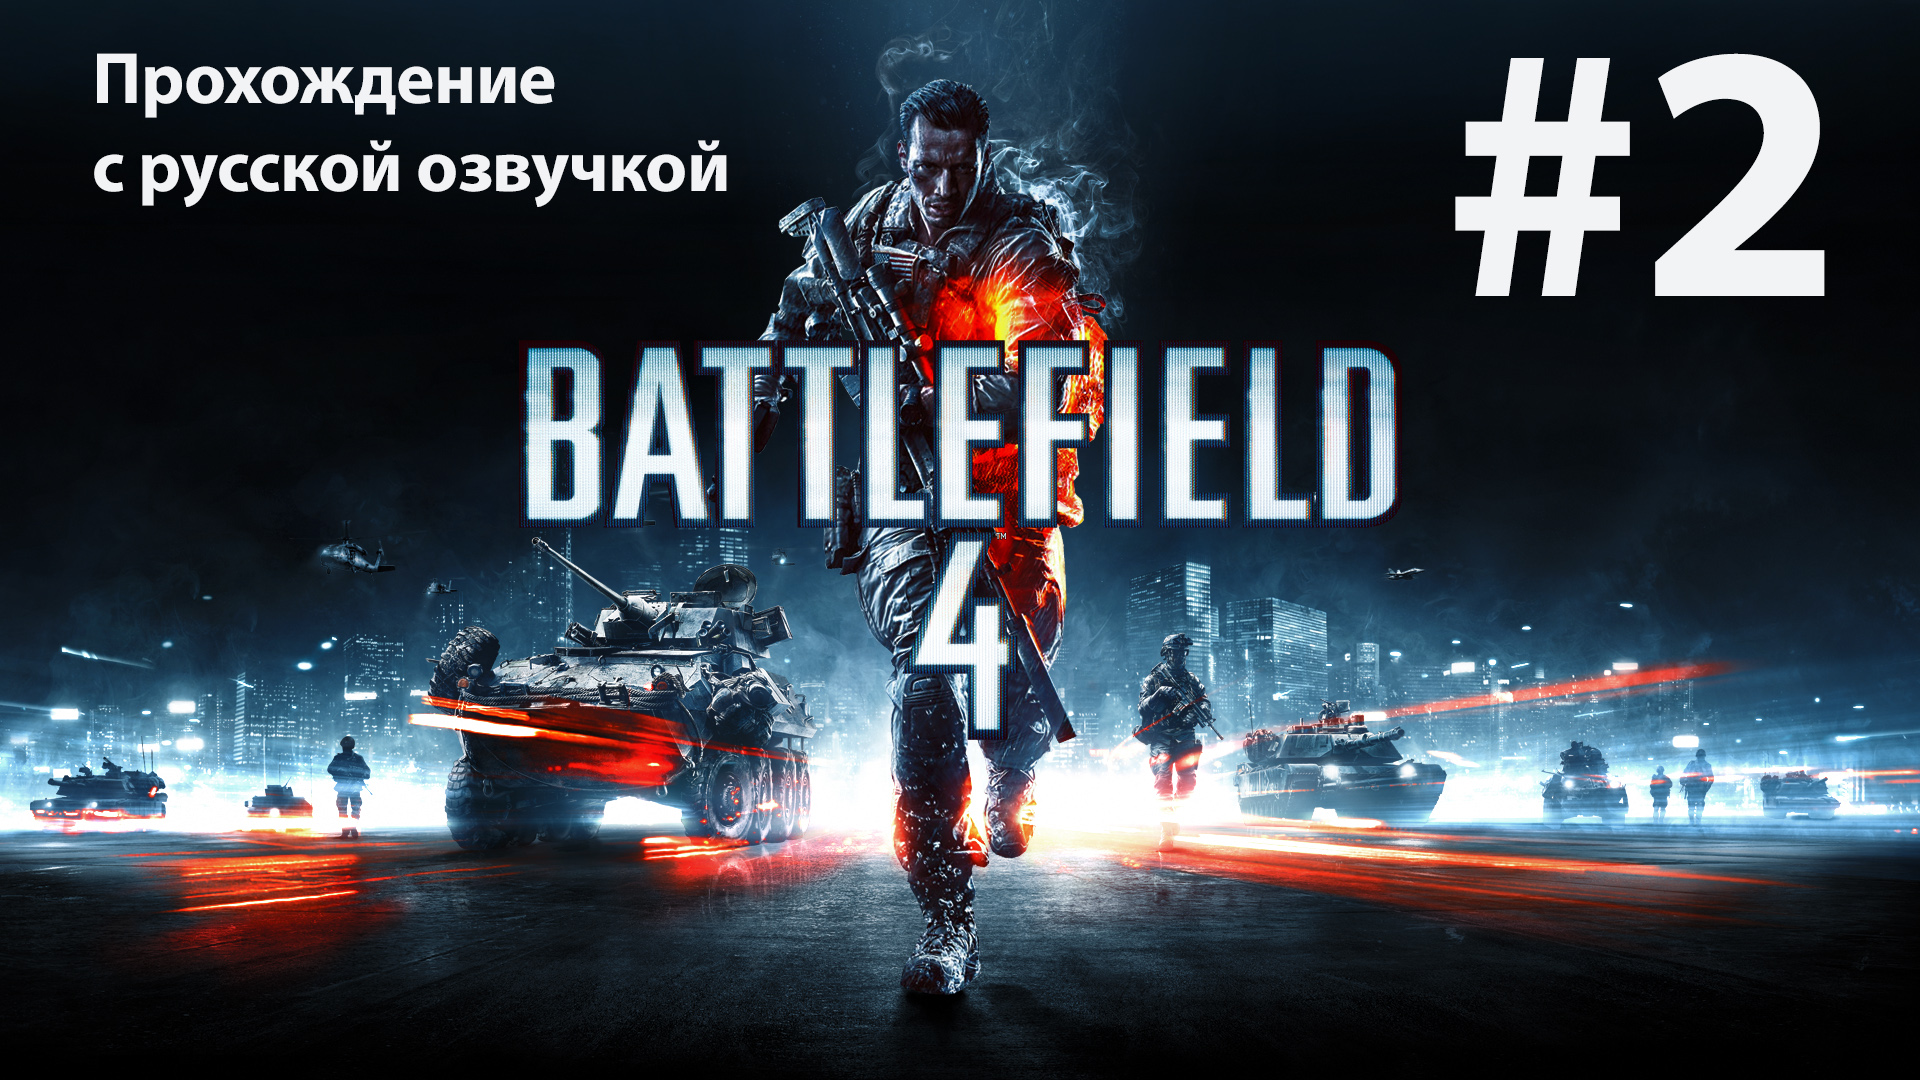 Шанхай: Игрофильм #2 [Battlefield 4] русская озвучка